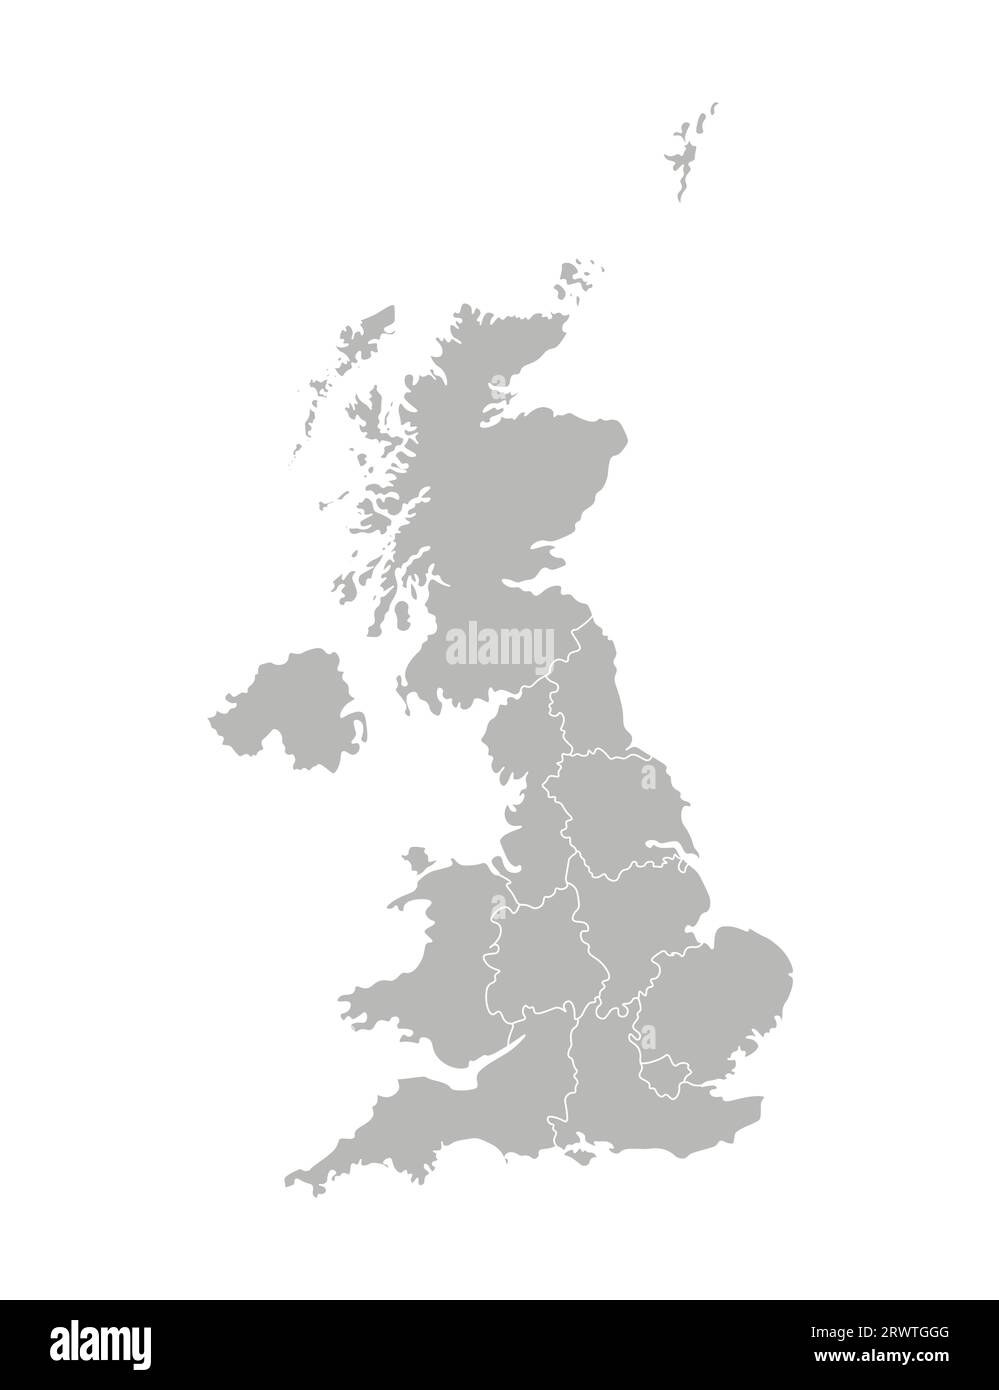 Illustrazione vettoriale isolata della mappa amministrativa semplificata del Regno Unito di Gran Bretagna e Irlanda del Nord. Confini delle province re Illustrazione Vettoriale